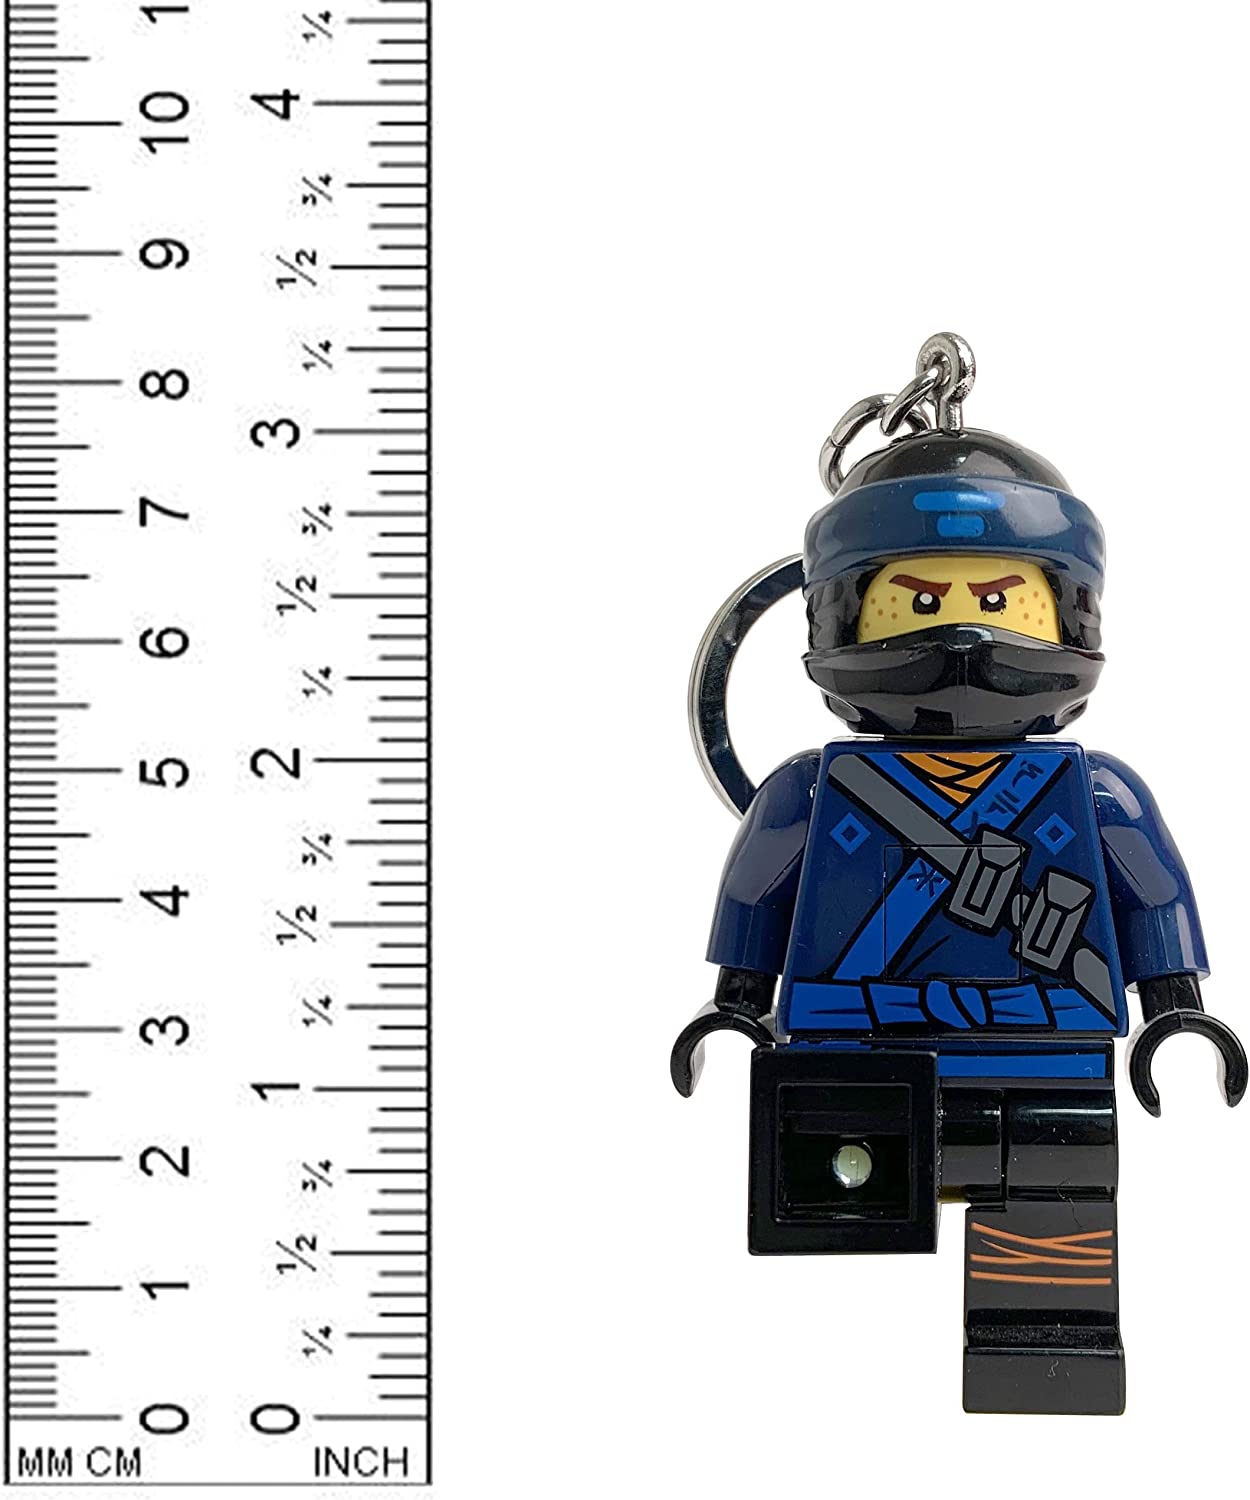 KE108J LEGO Ninjago Movie Jay key Light - 3-Inch-Tall Figure, Ages 6 and up